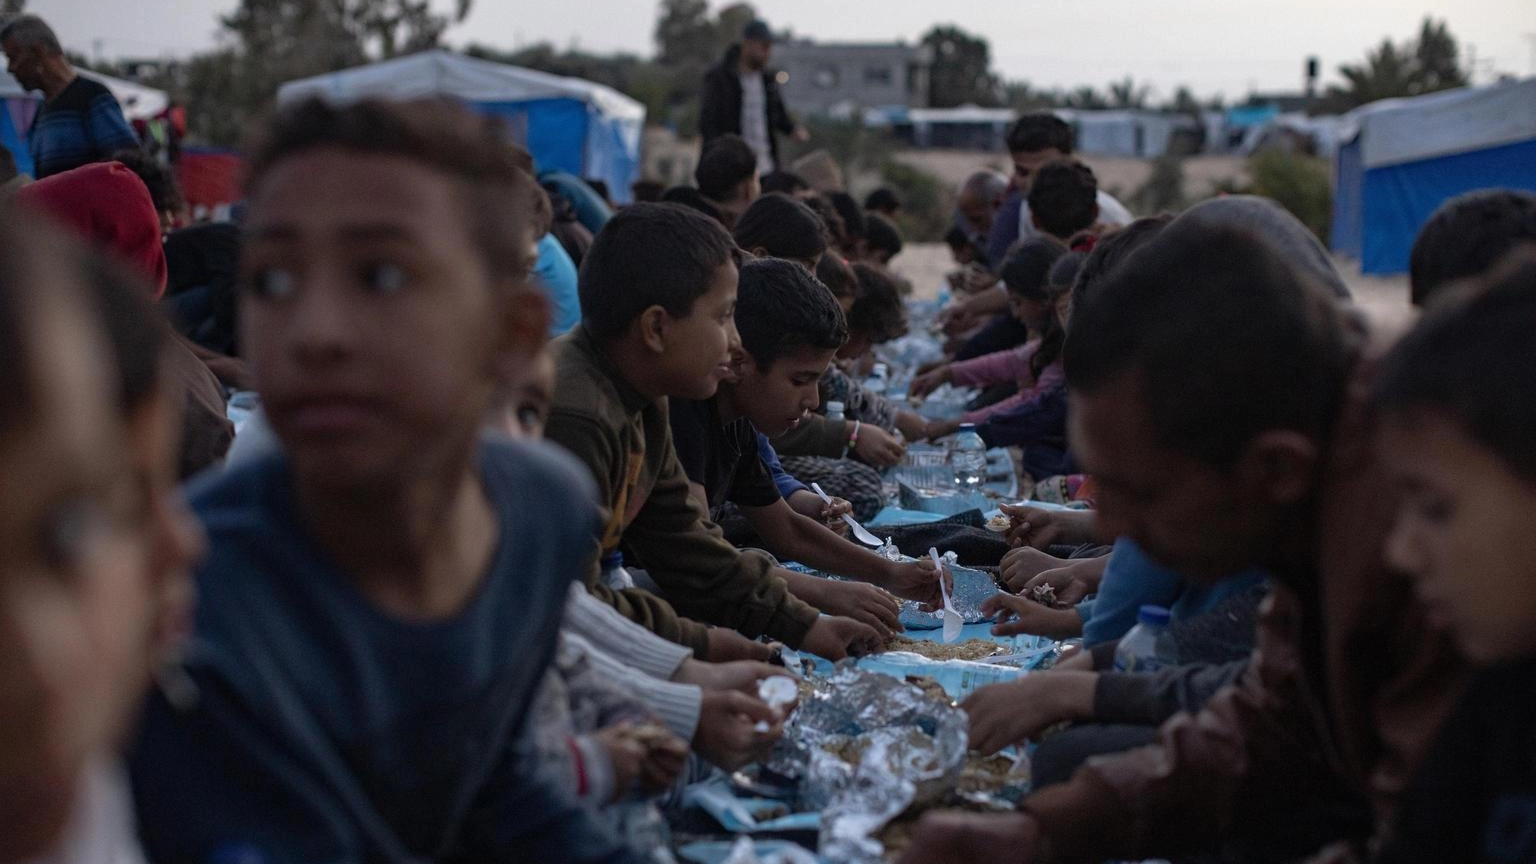 Onu,fame a Gaza potrebbe equivalere a un crimine di guerra